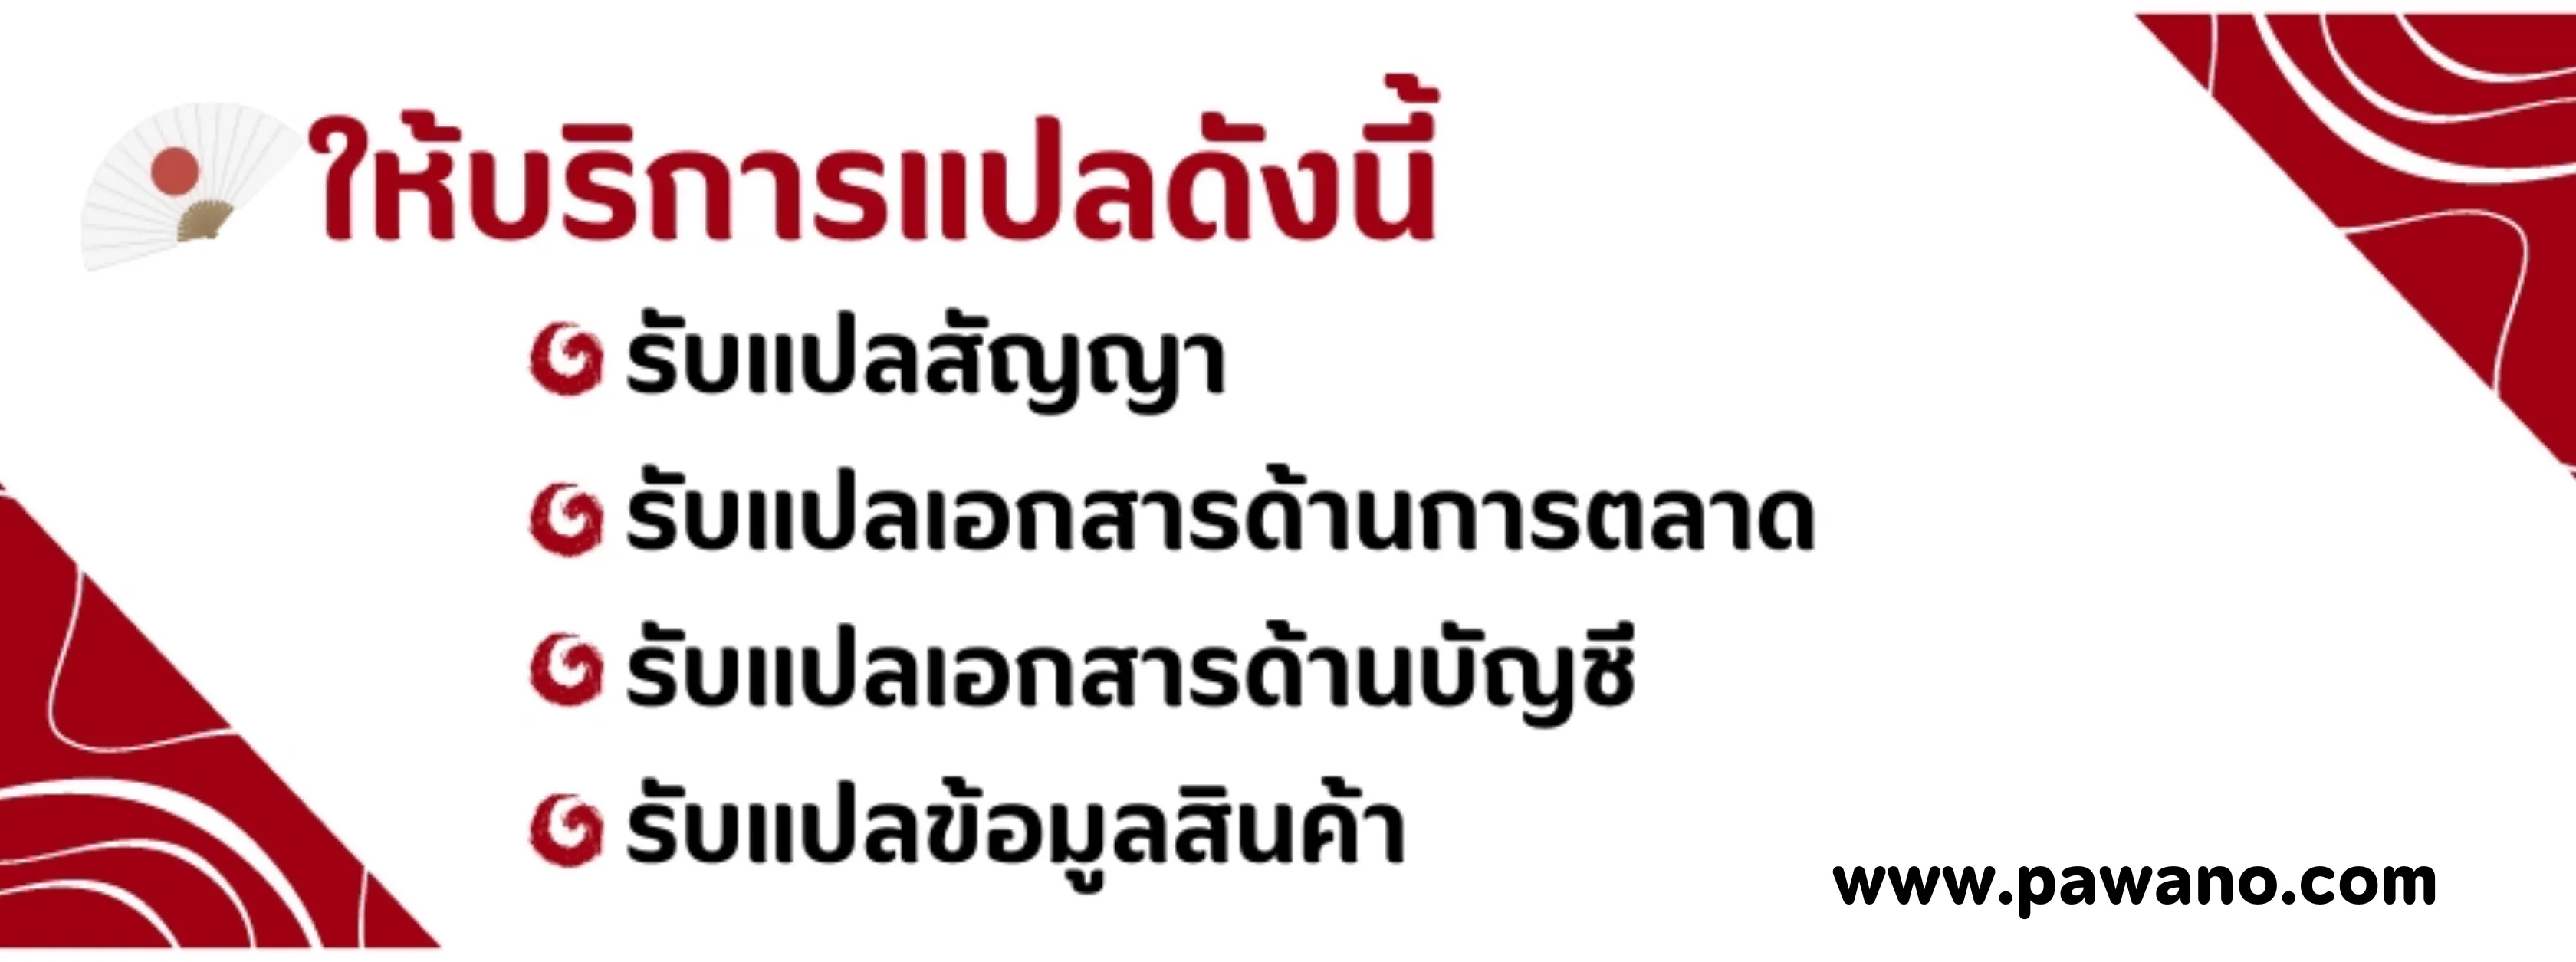 ให้แปลภาษาไทยเป็นญี่ปุ่น